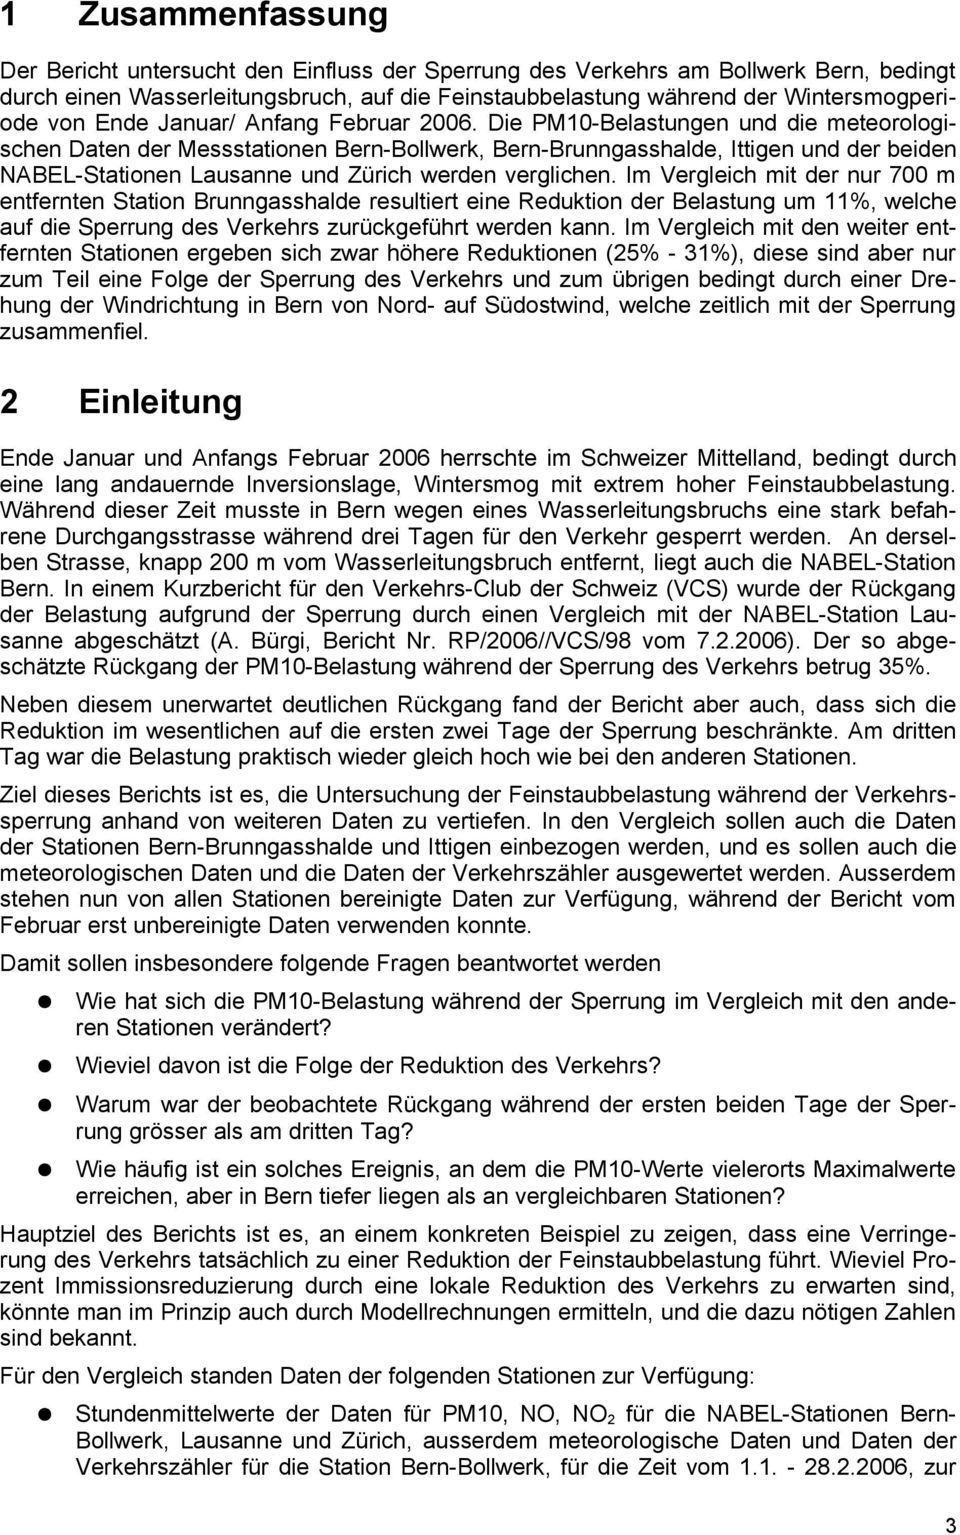 Die PM1-Belastungen und die meteorologischen Daten der Messstationen Bern-Bollwerk, Bern-Brunngasshalde, Ittigen und der beiden NABEL-Stationen Lausanne und Zürich werden verglichen.